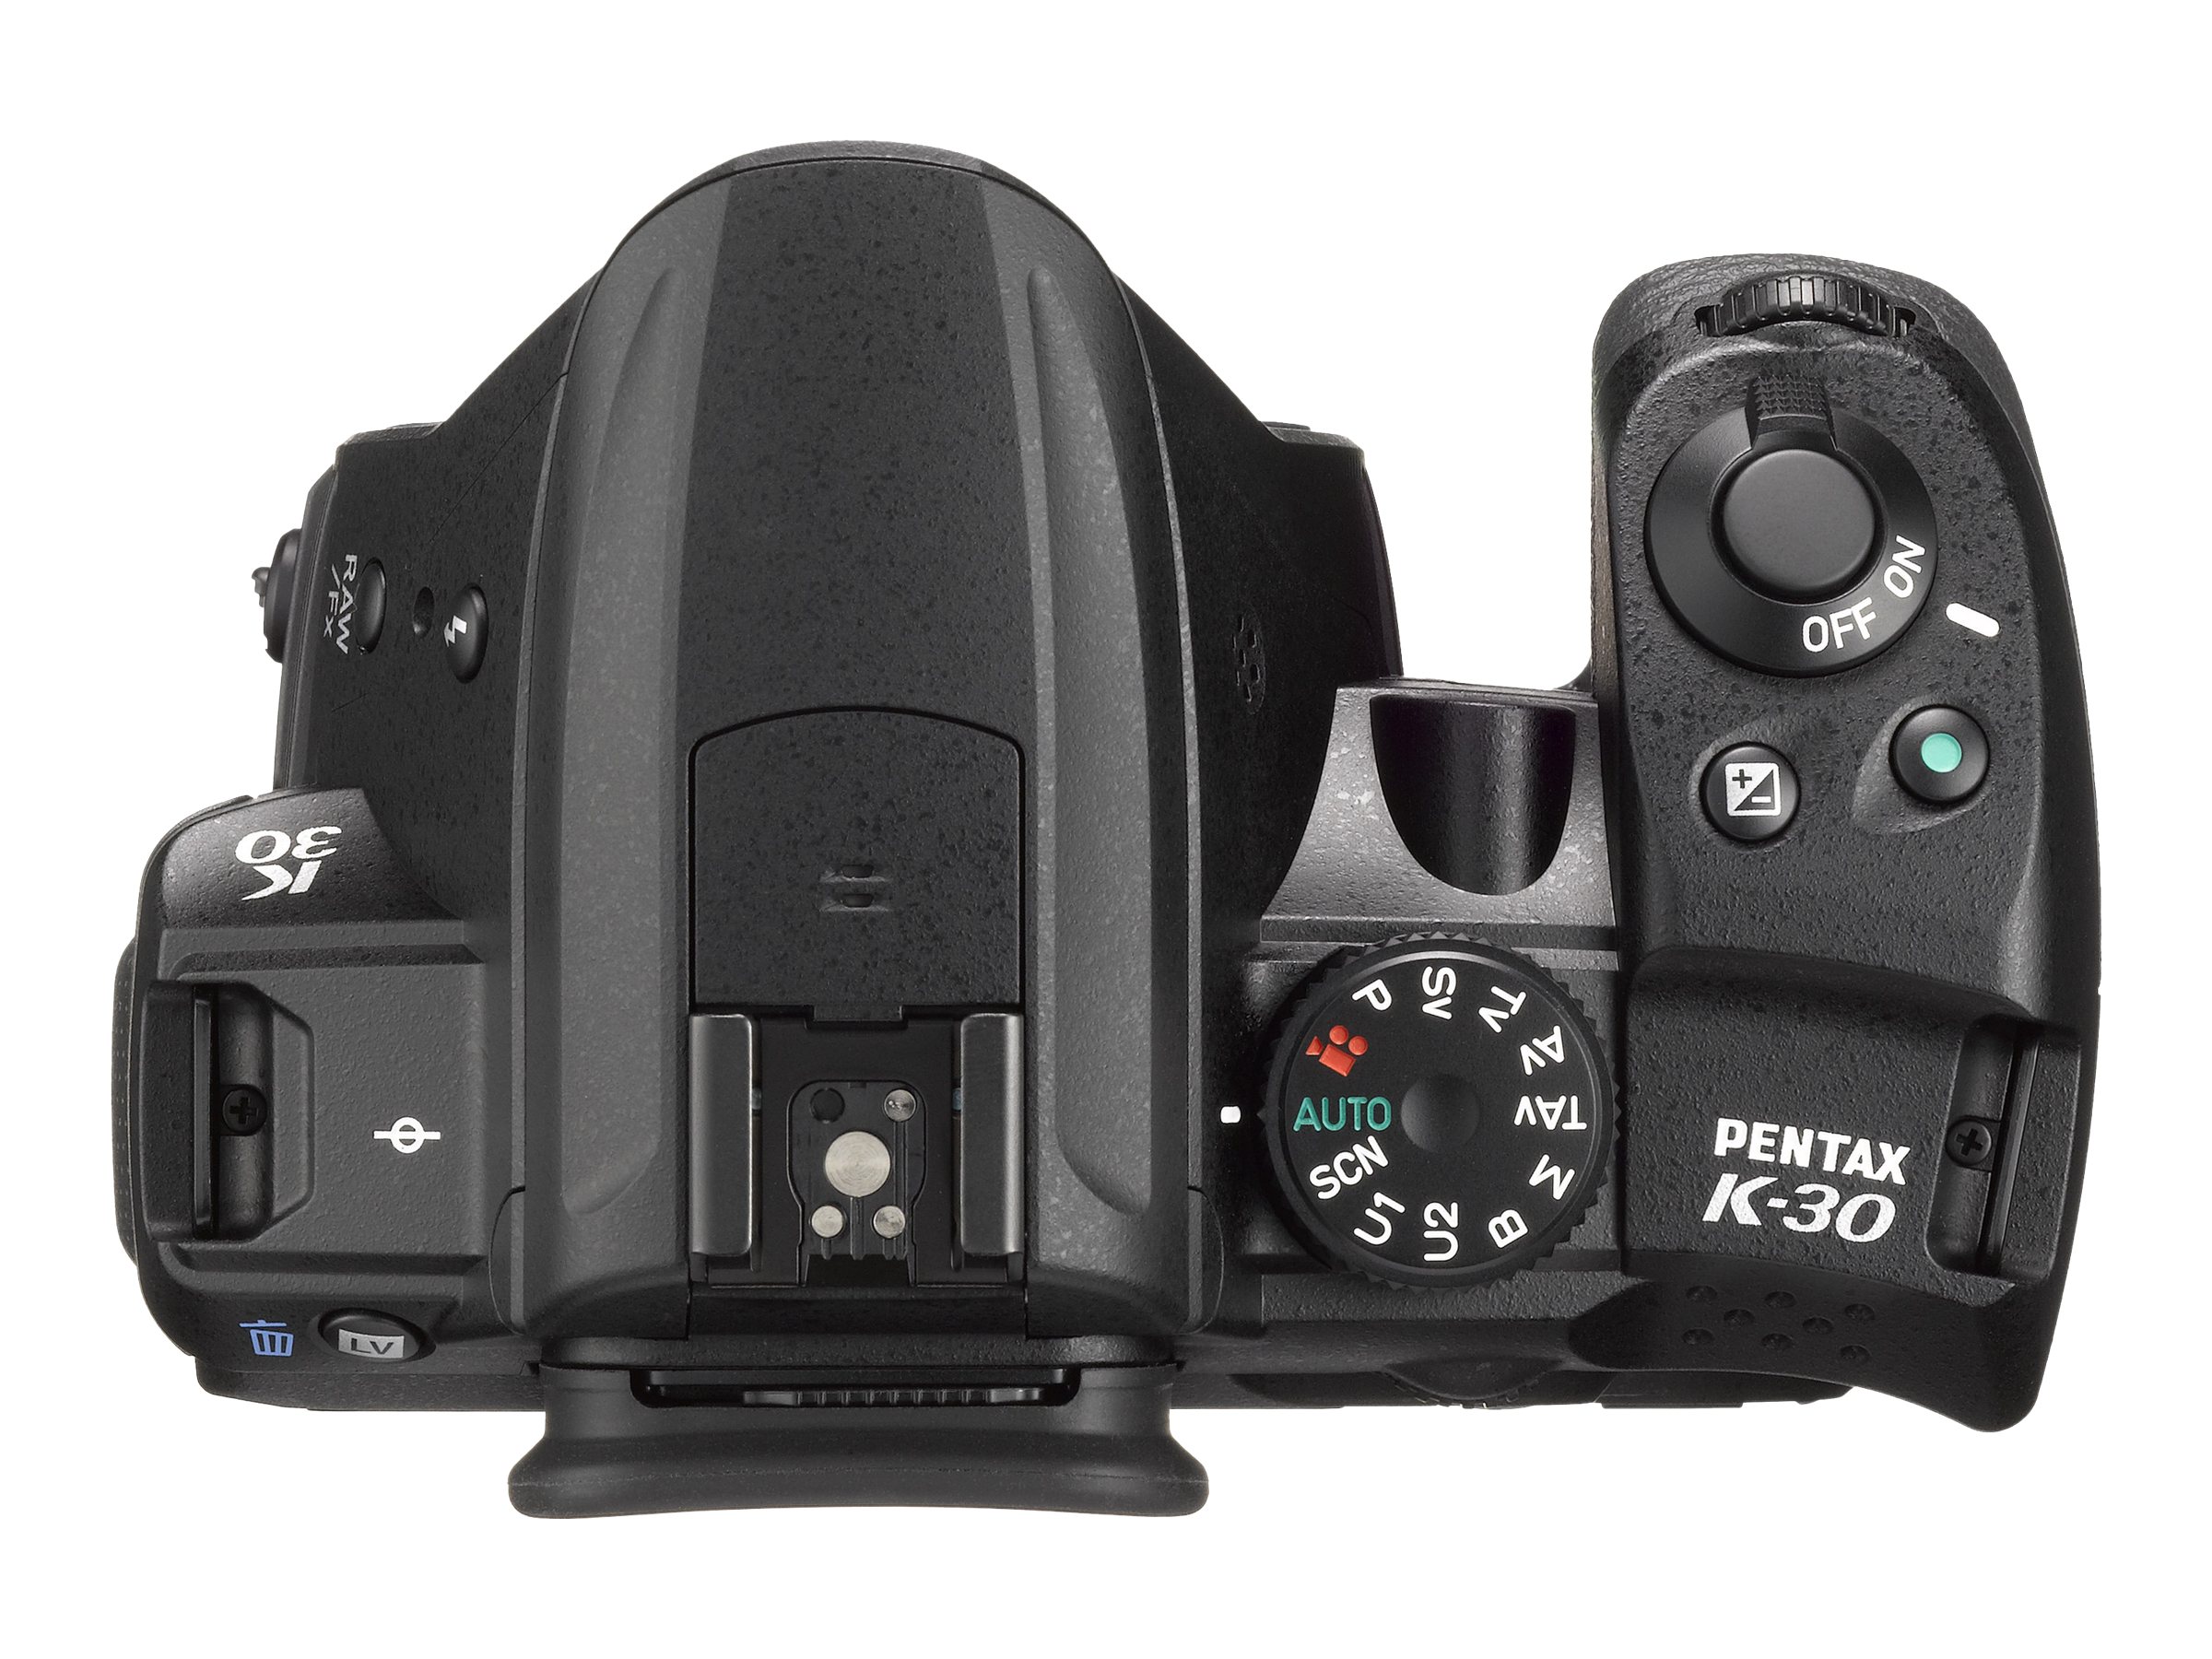 Pentax K-30 Weather-Sealed 16 MP CMOS Digital SLR with 18-55mm Lens (Black) - image 2 of 3